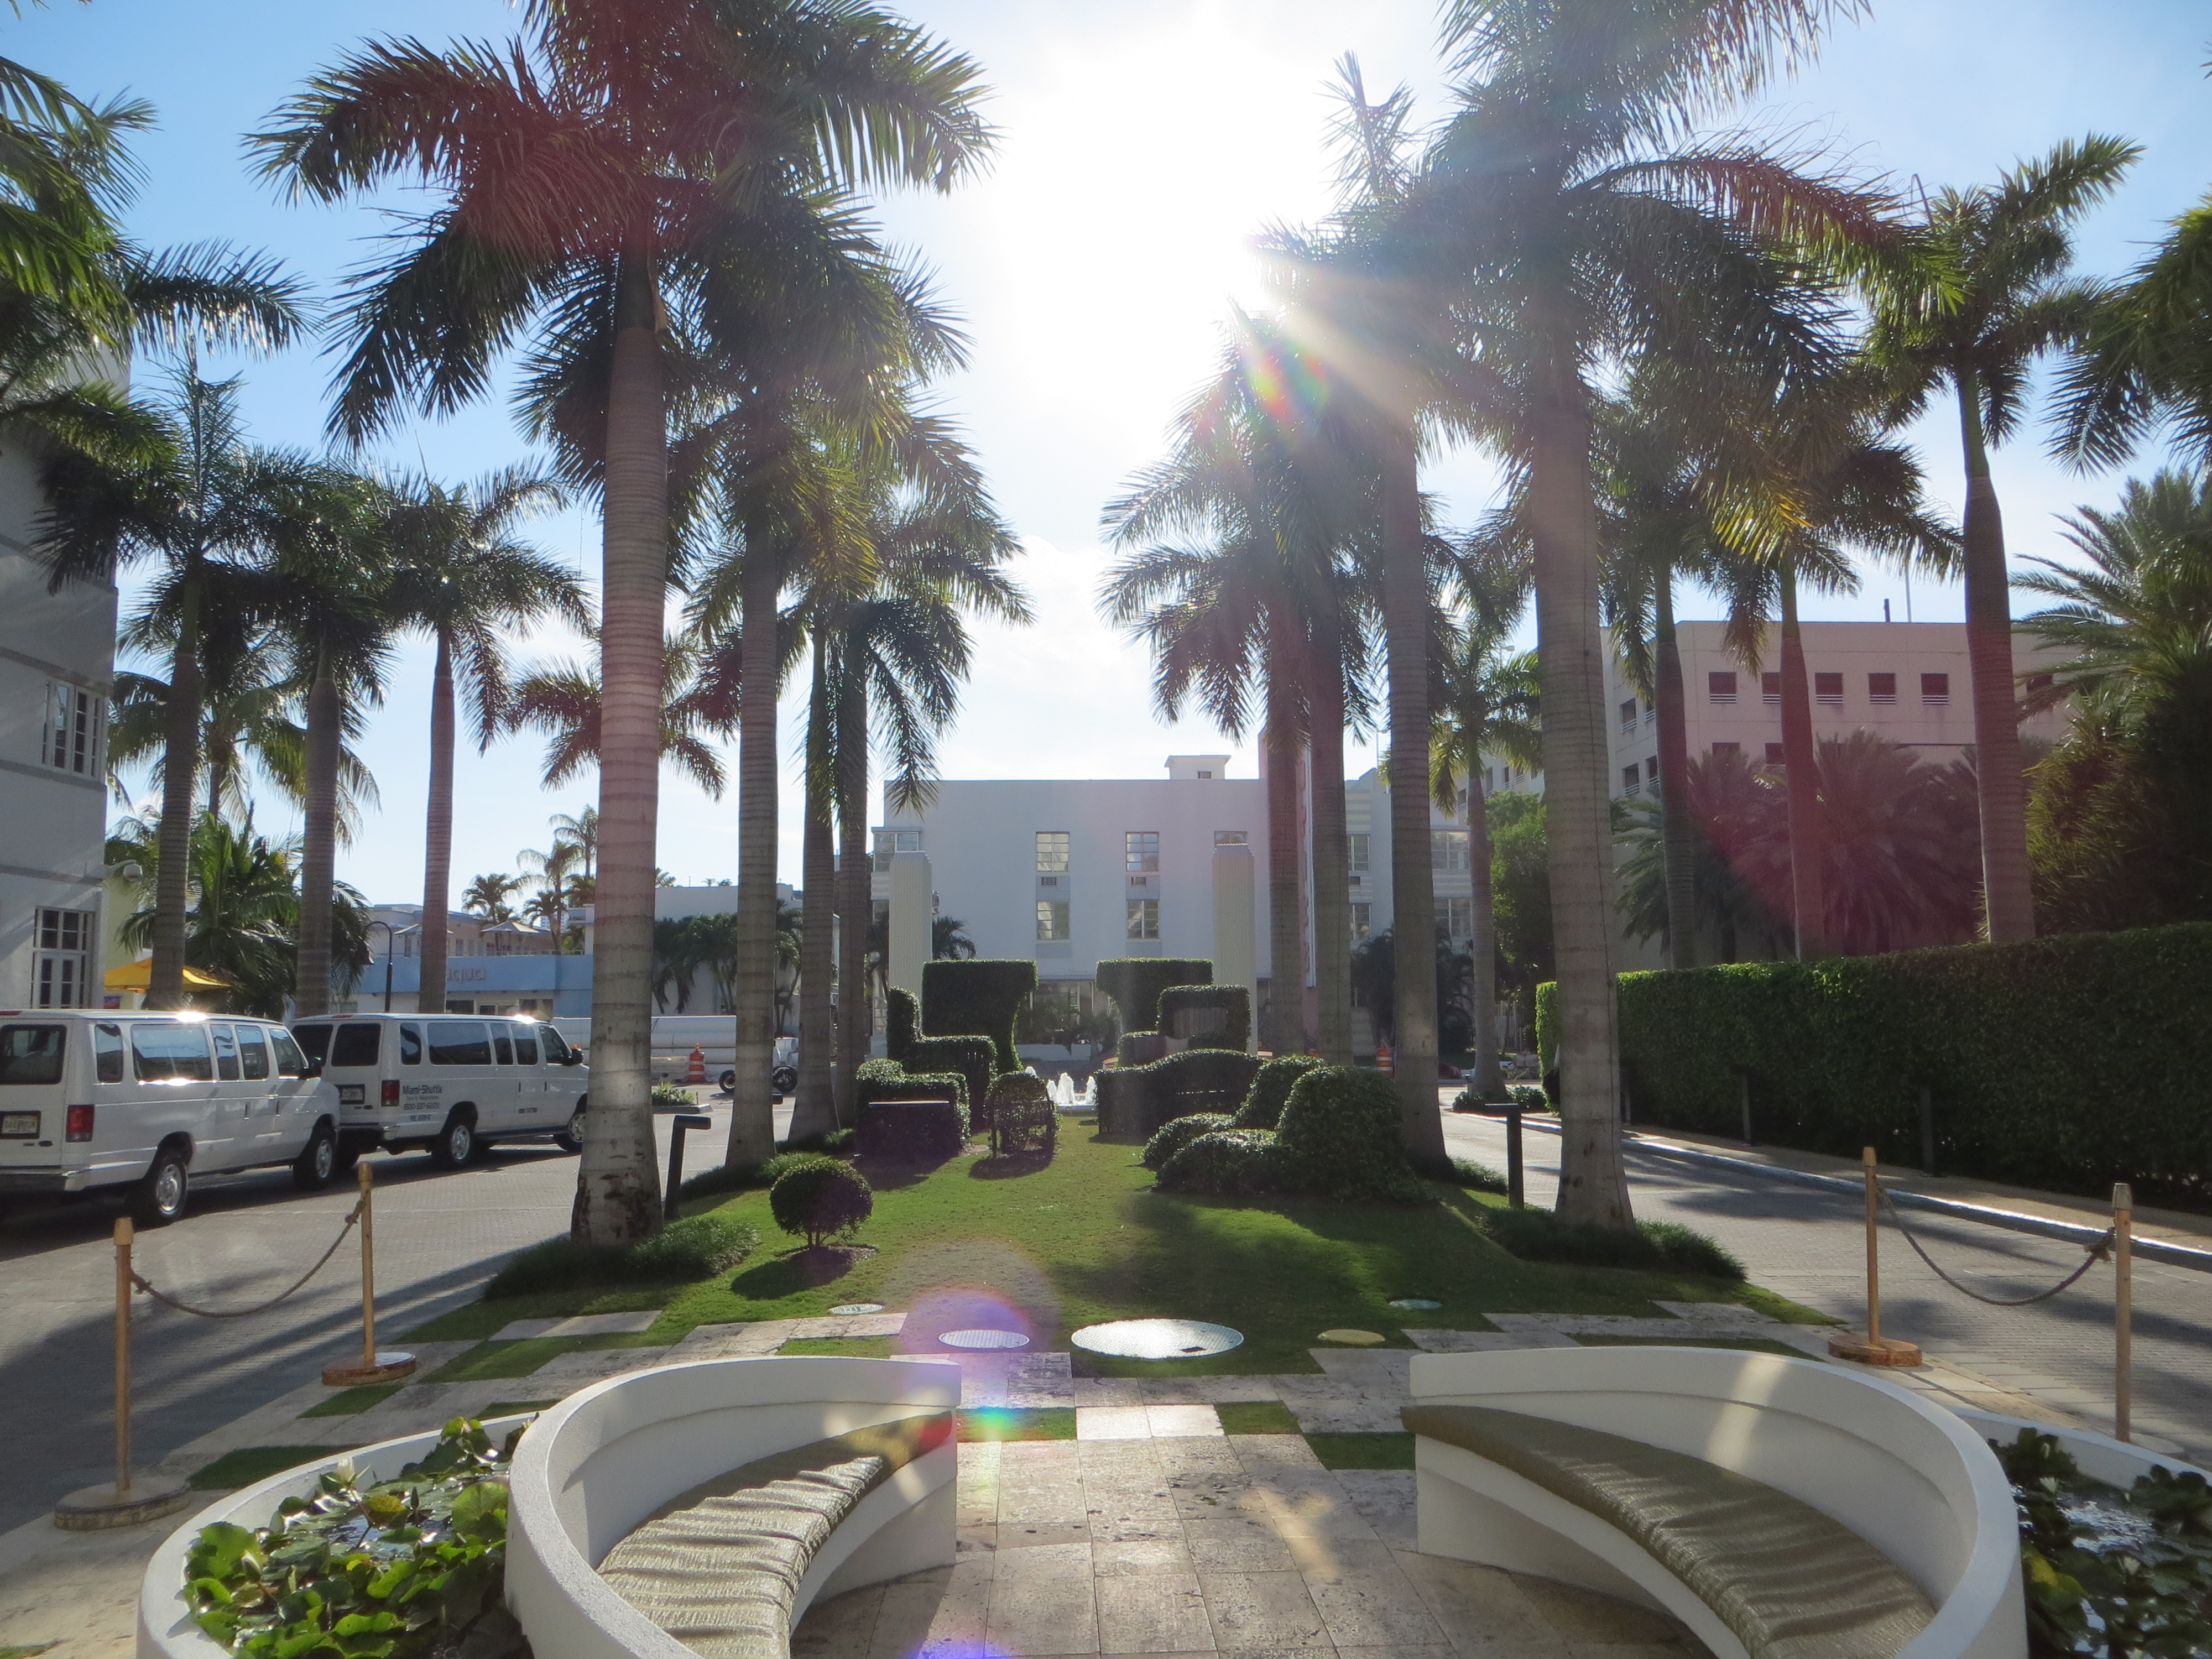 Das James Royal Palm Hotel empfängt seine Gäste mit viel Sonne und Palmen...